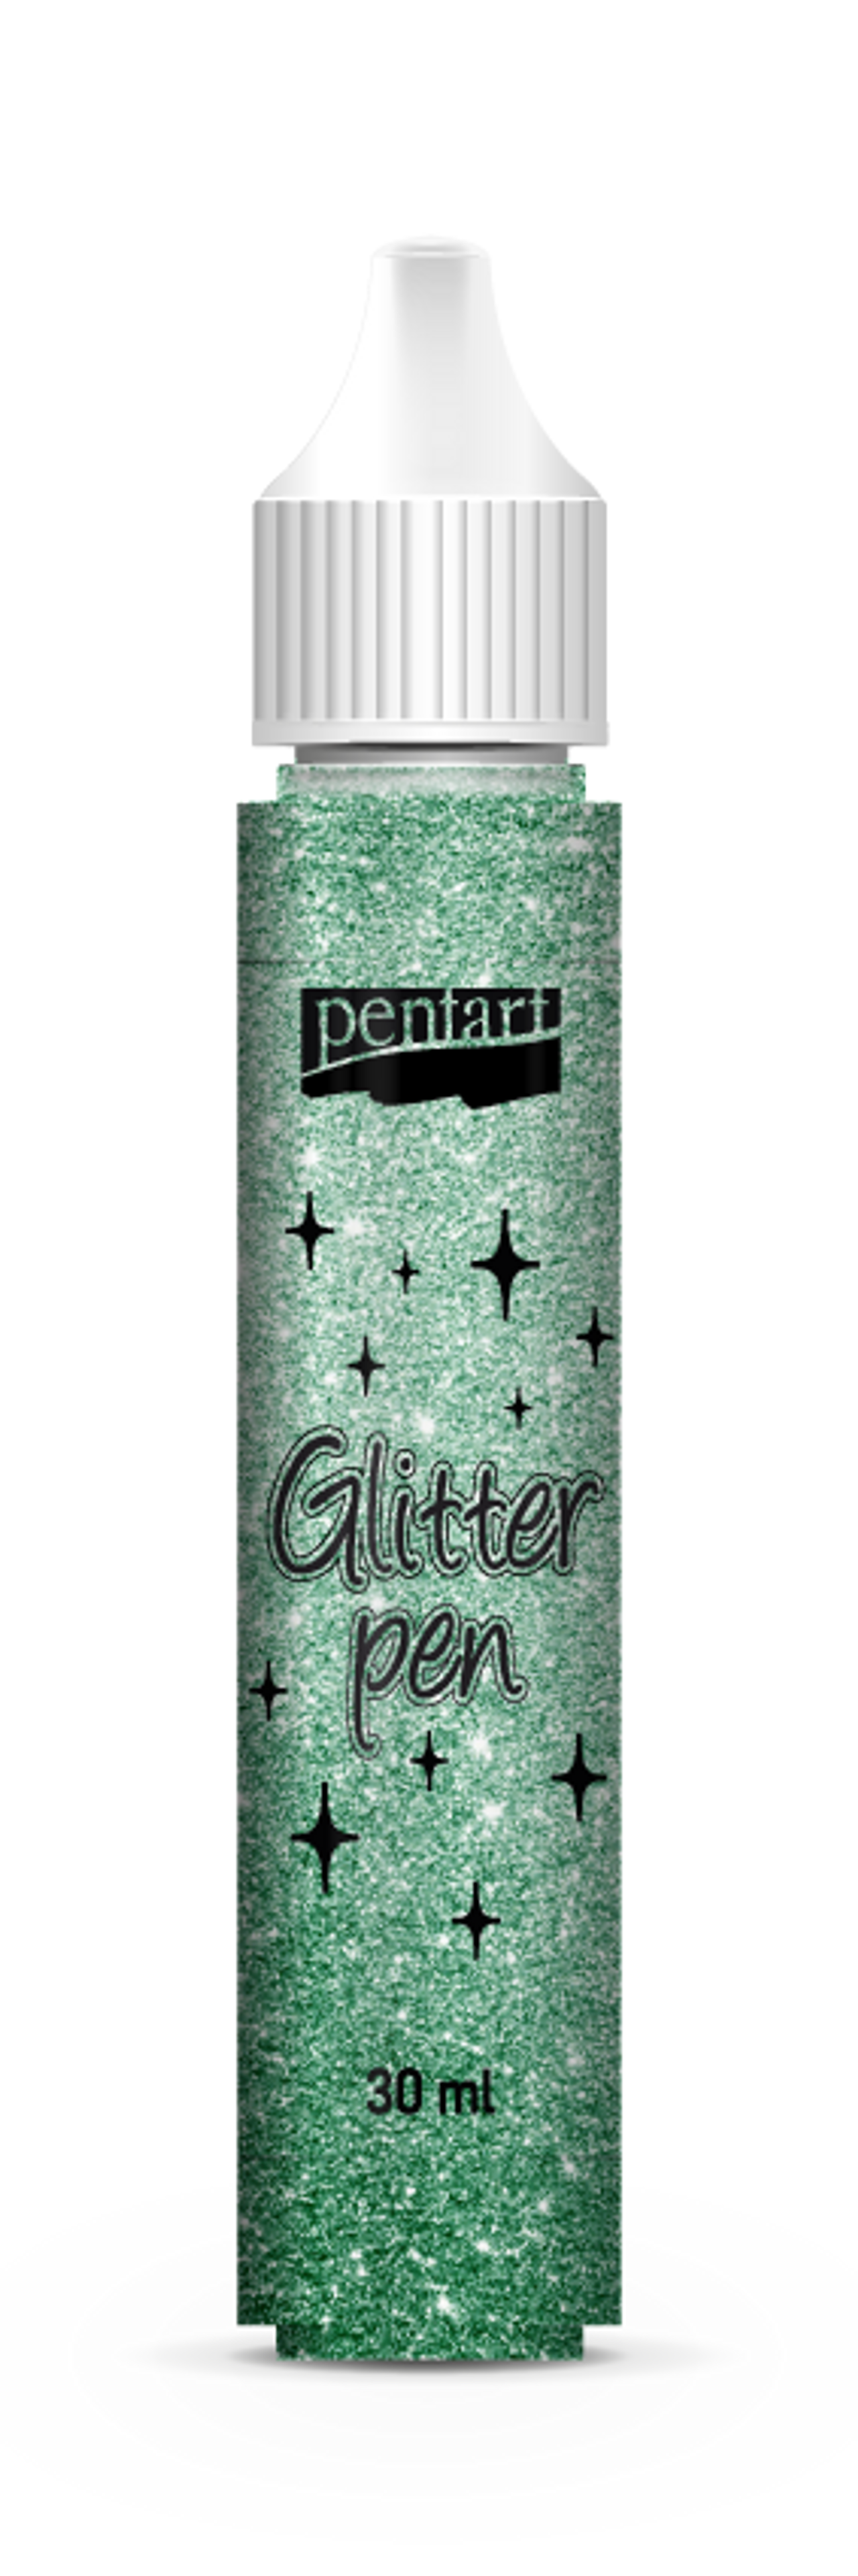 Pentart Glitter Pens 30 ml